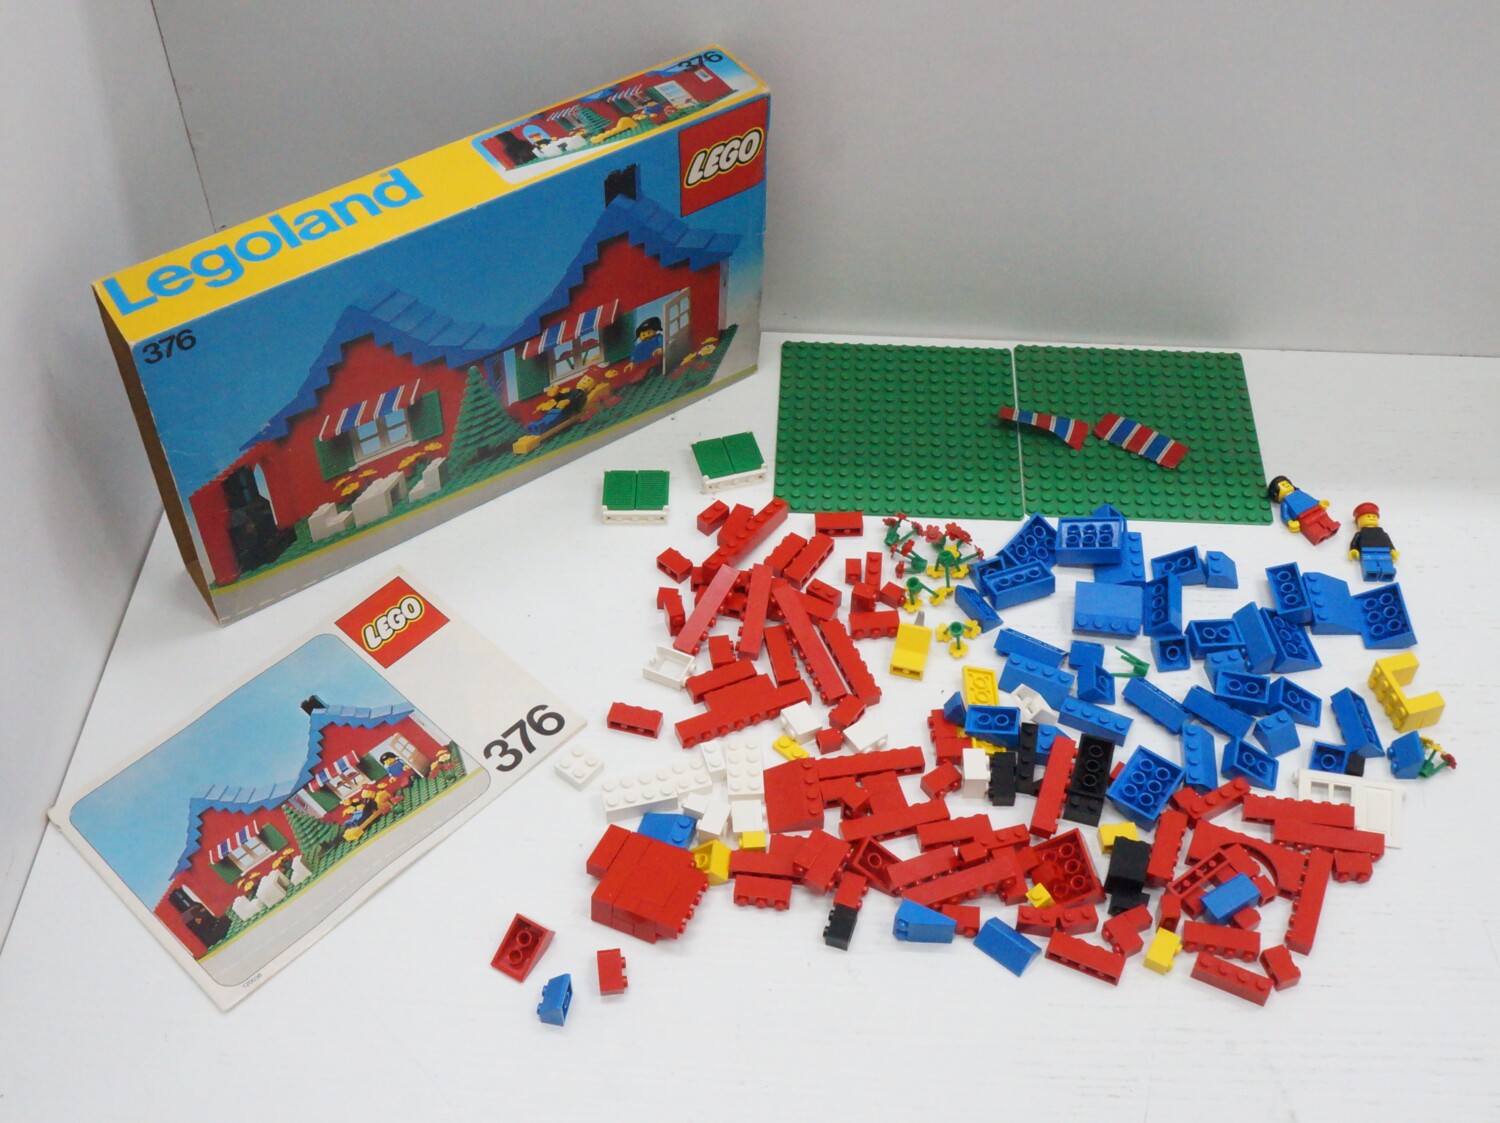 Lego Legoland n. 376 Town House with Garden - Casa con Giardino con  Istruzion